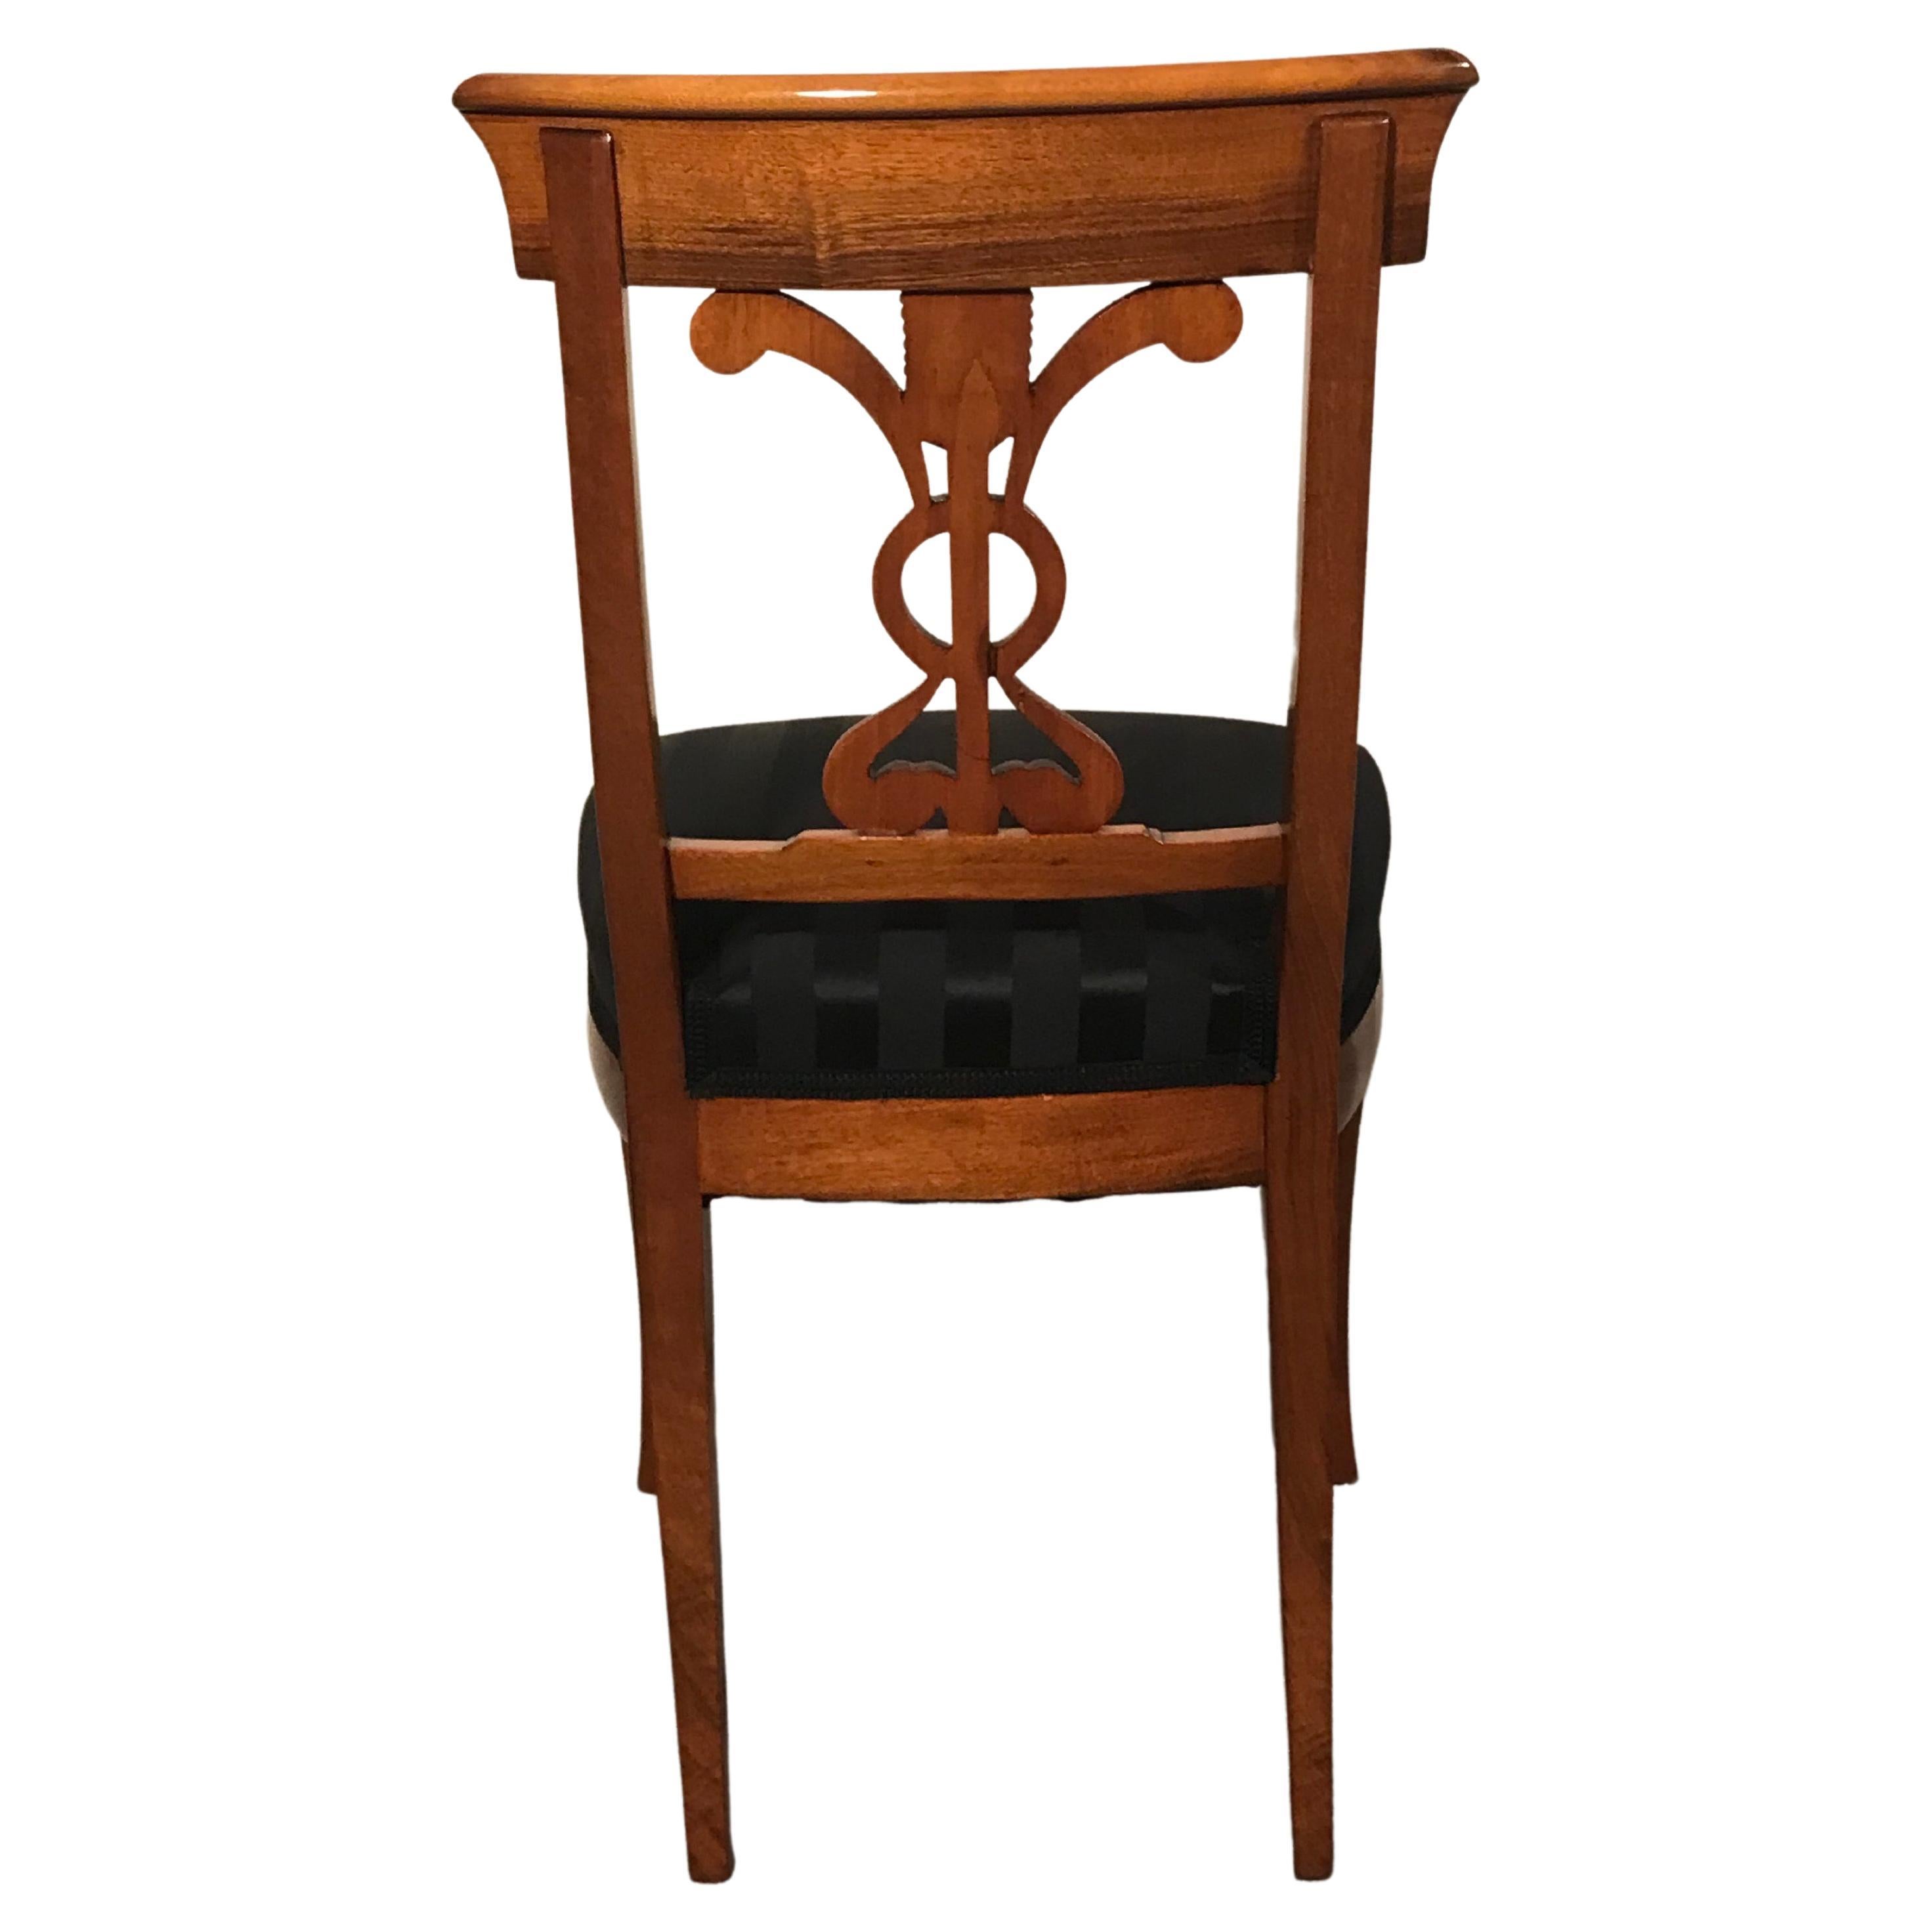 Dieses Set aus 6 Biedermeier-Esszimmerstühlen hat ein hübsches Walnussfurnier. Die Stühle zeichnen sich durch ein wunderschönes Dekor der Rückenlehne aus. Sie sind komplett neu lackiert mit Schellack, neuen Polstern und einem eleganten schwarzen JAB